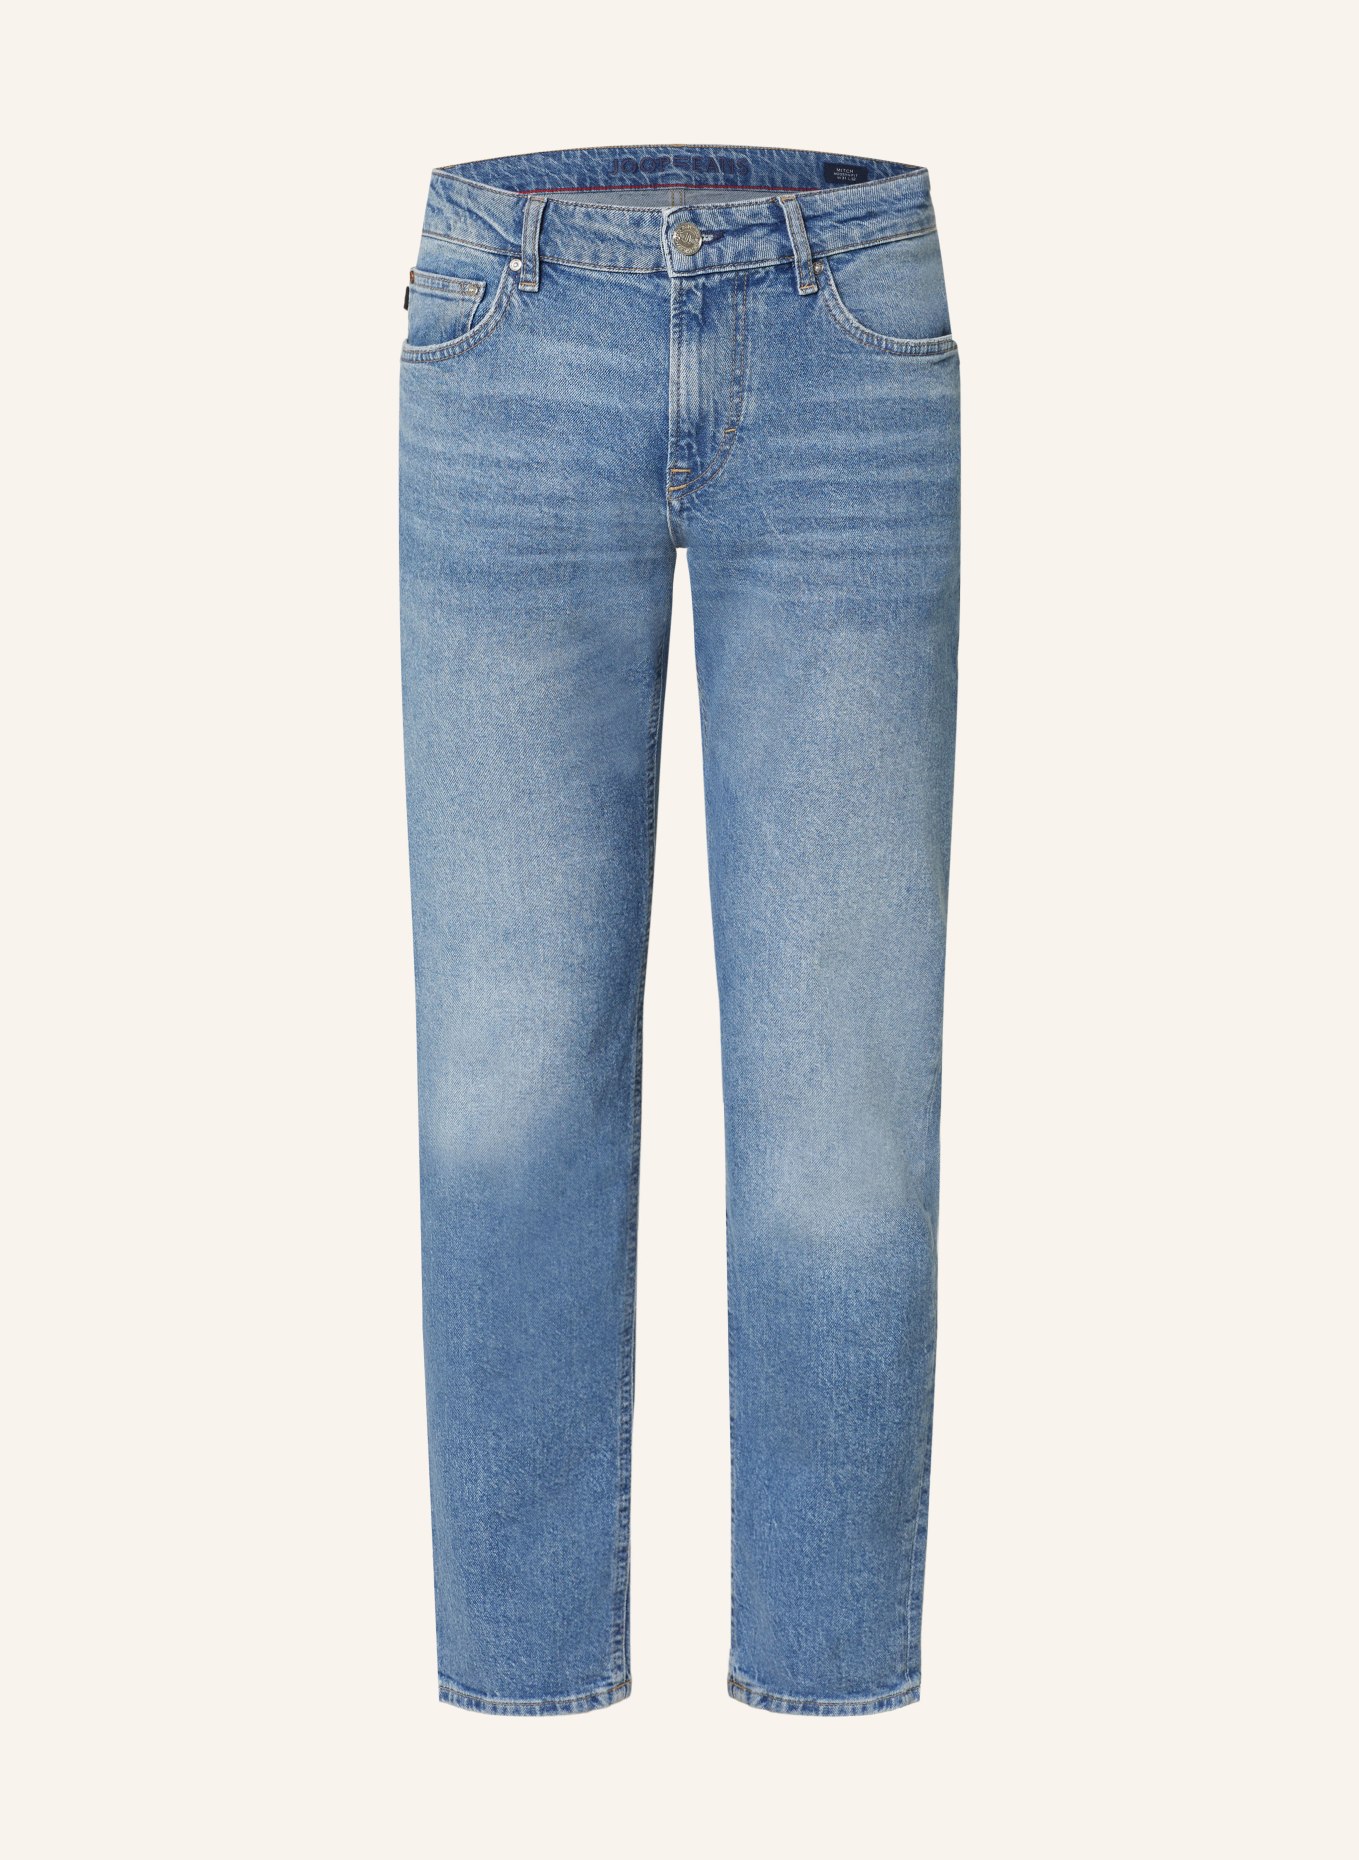 JOOP! JEANS Jeans MITCH Modern Fit, Farbe: 433 Bright Blue                433 (Bild 1)